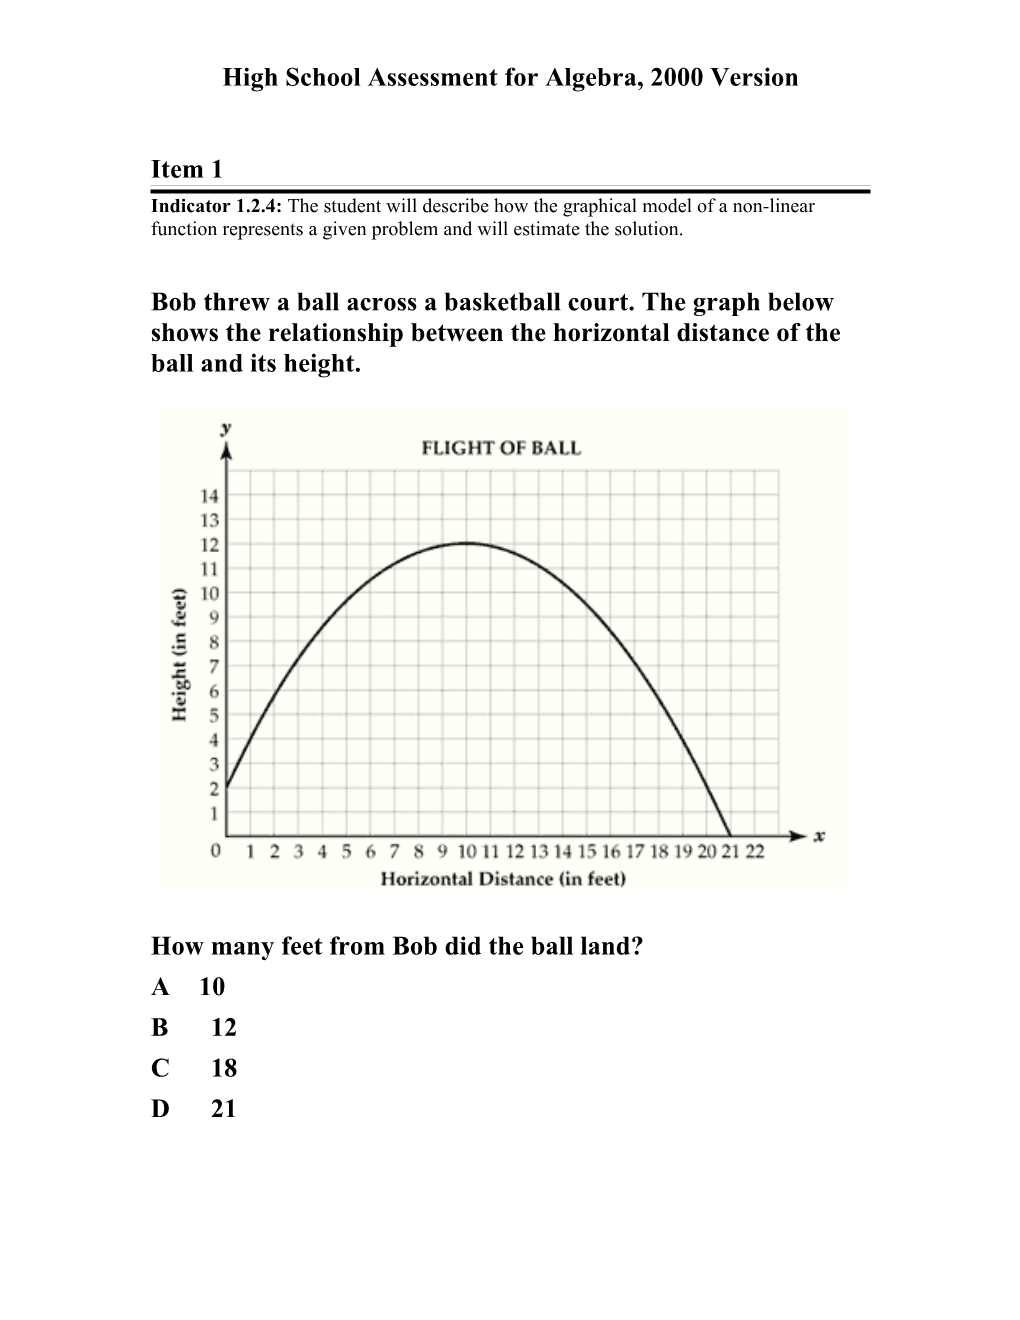 High School Assessment for Algebra, 2001 Version